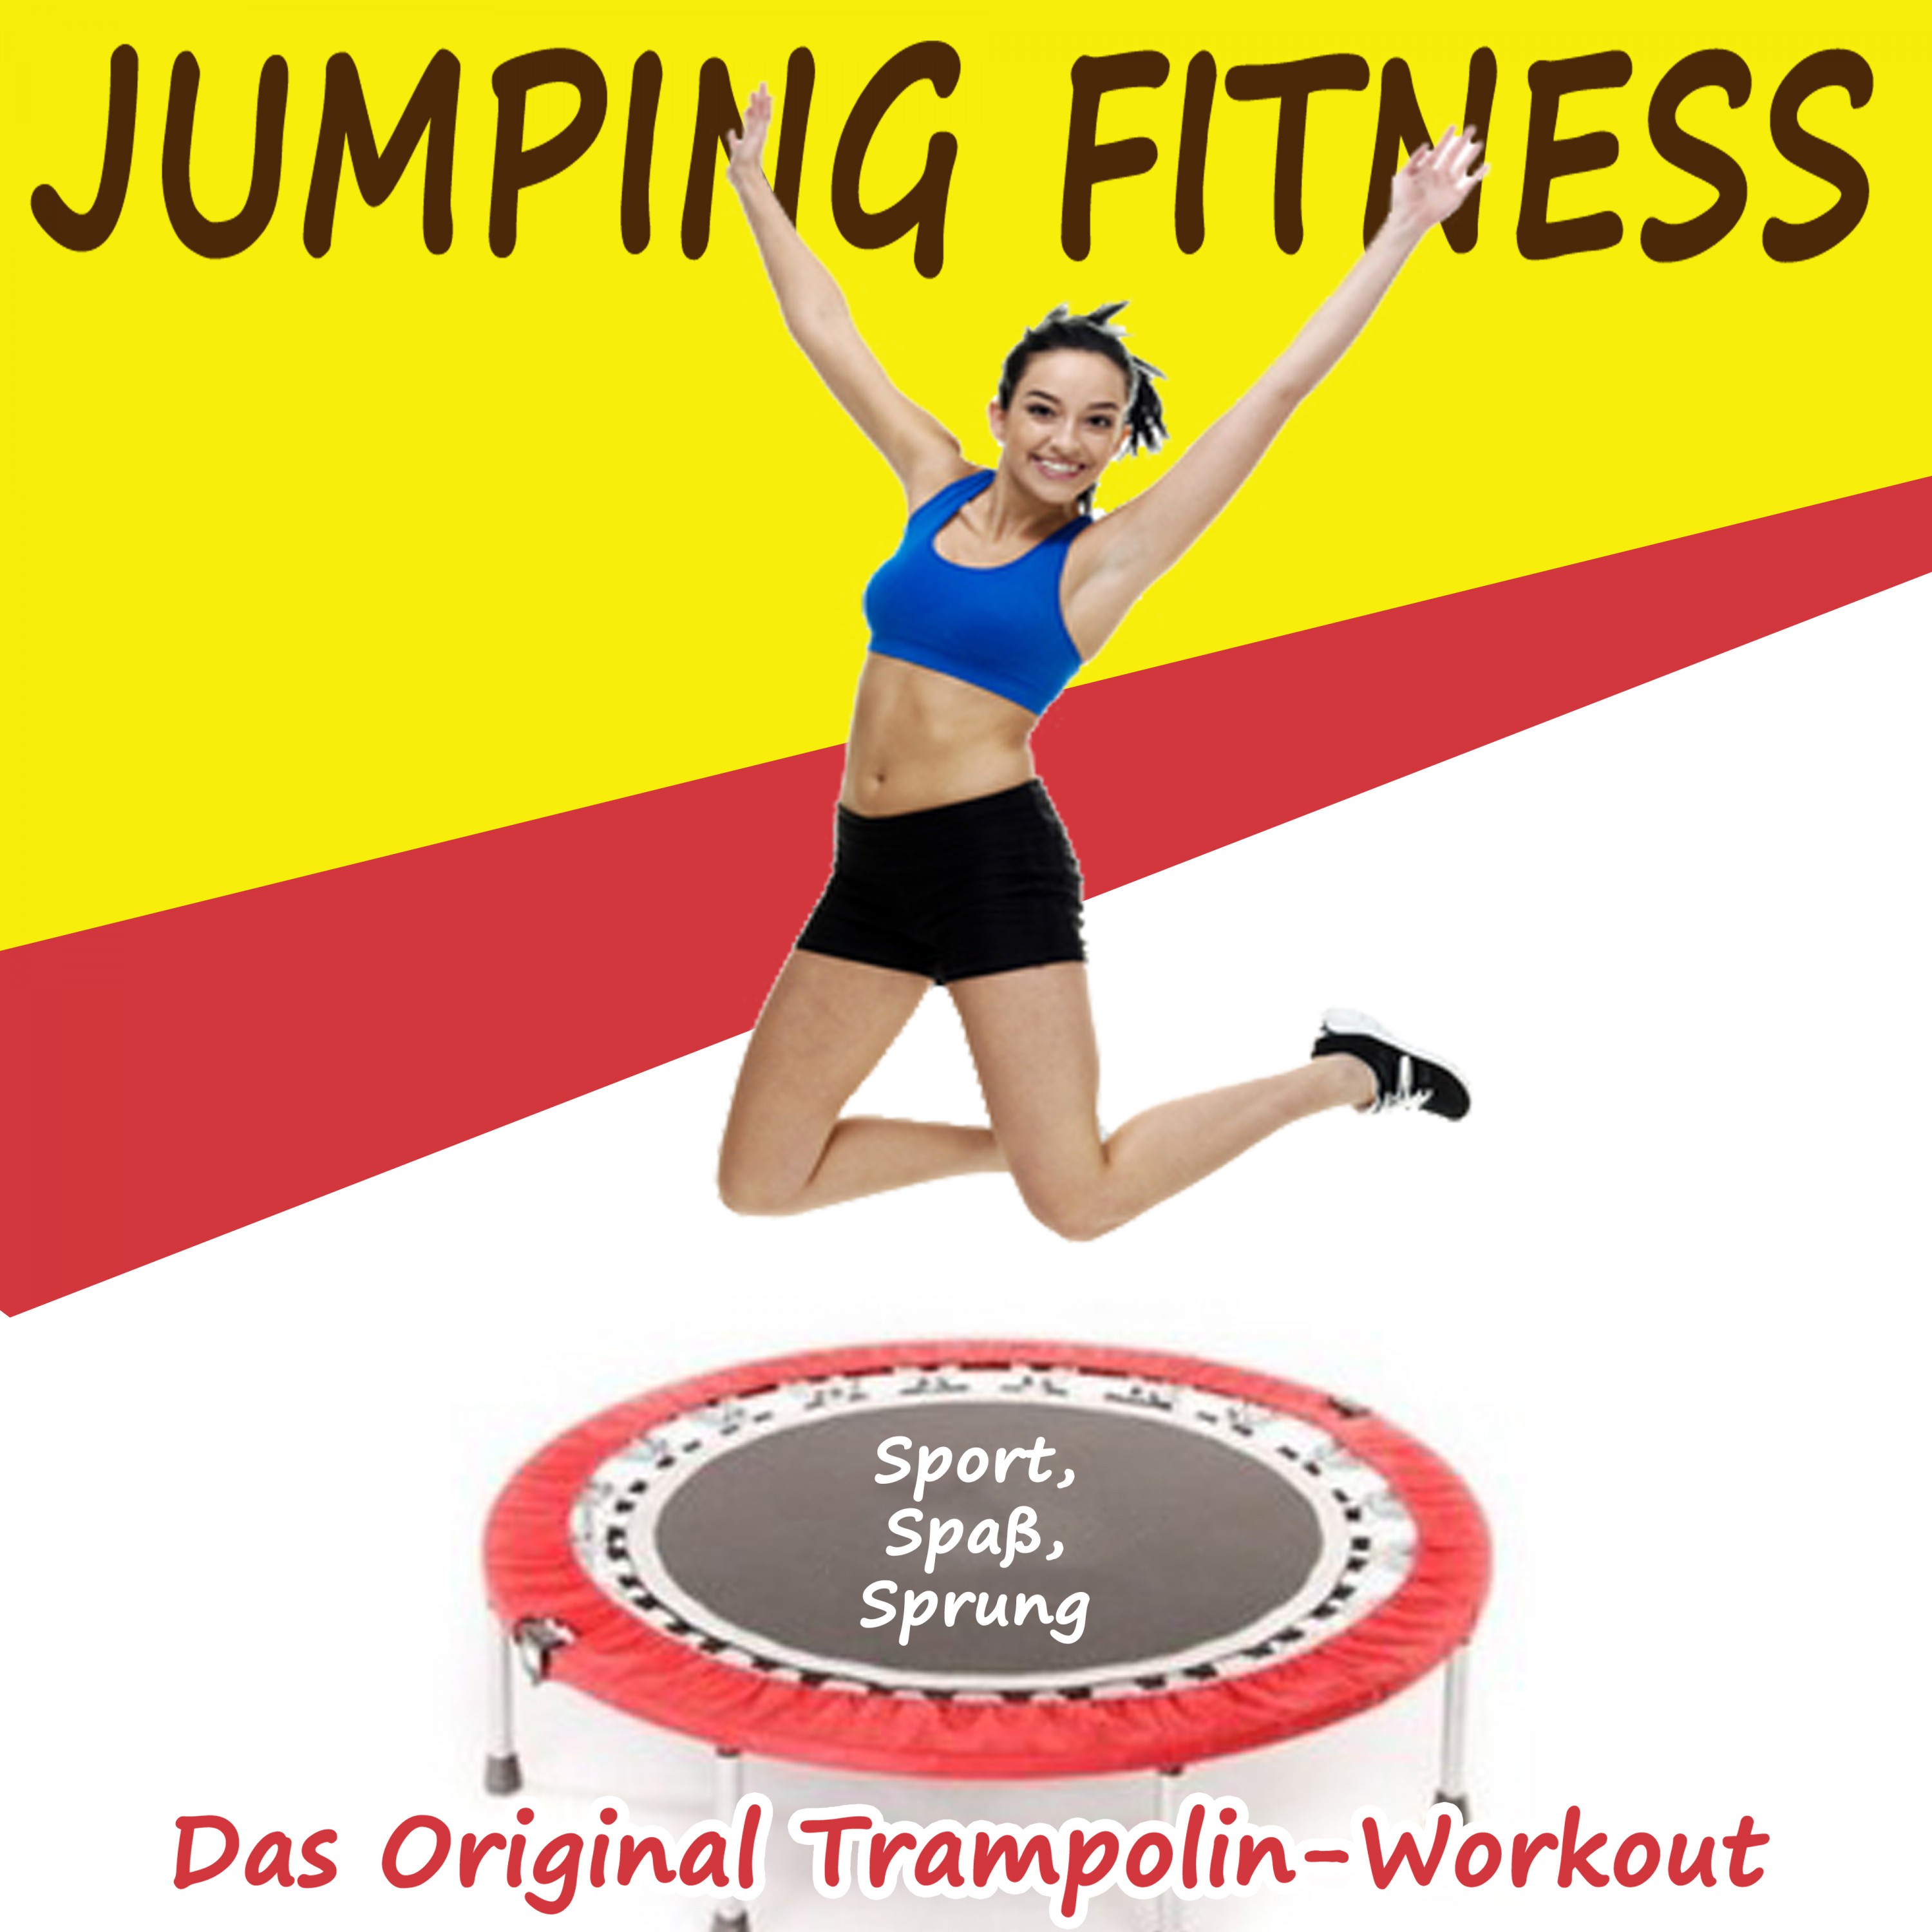 Jumping Fitness Sport, Spa, Sprung  Das Original TrampolinWorkout  DJ Mix